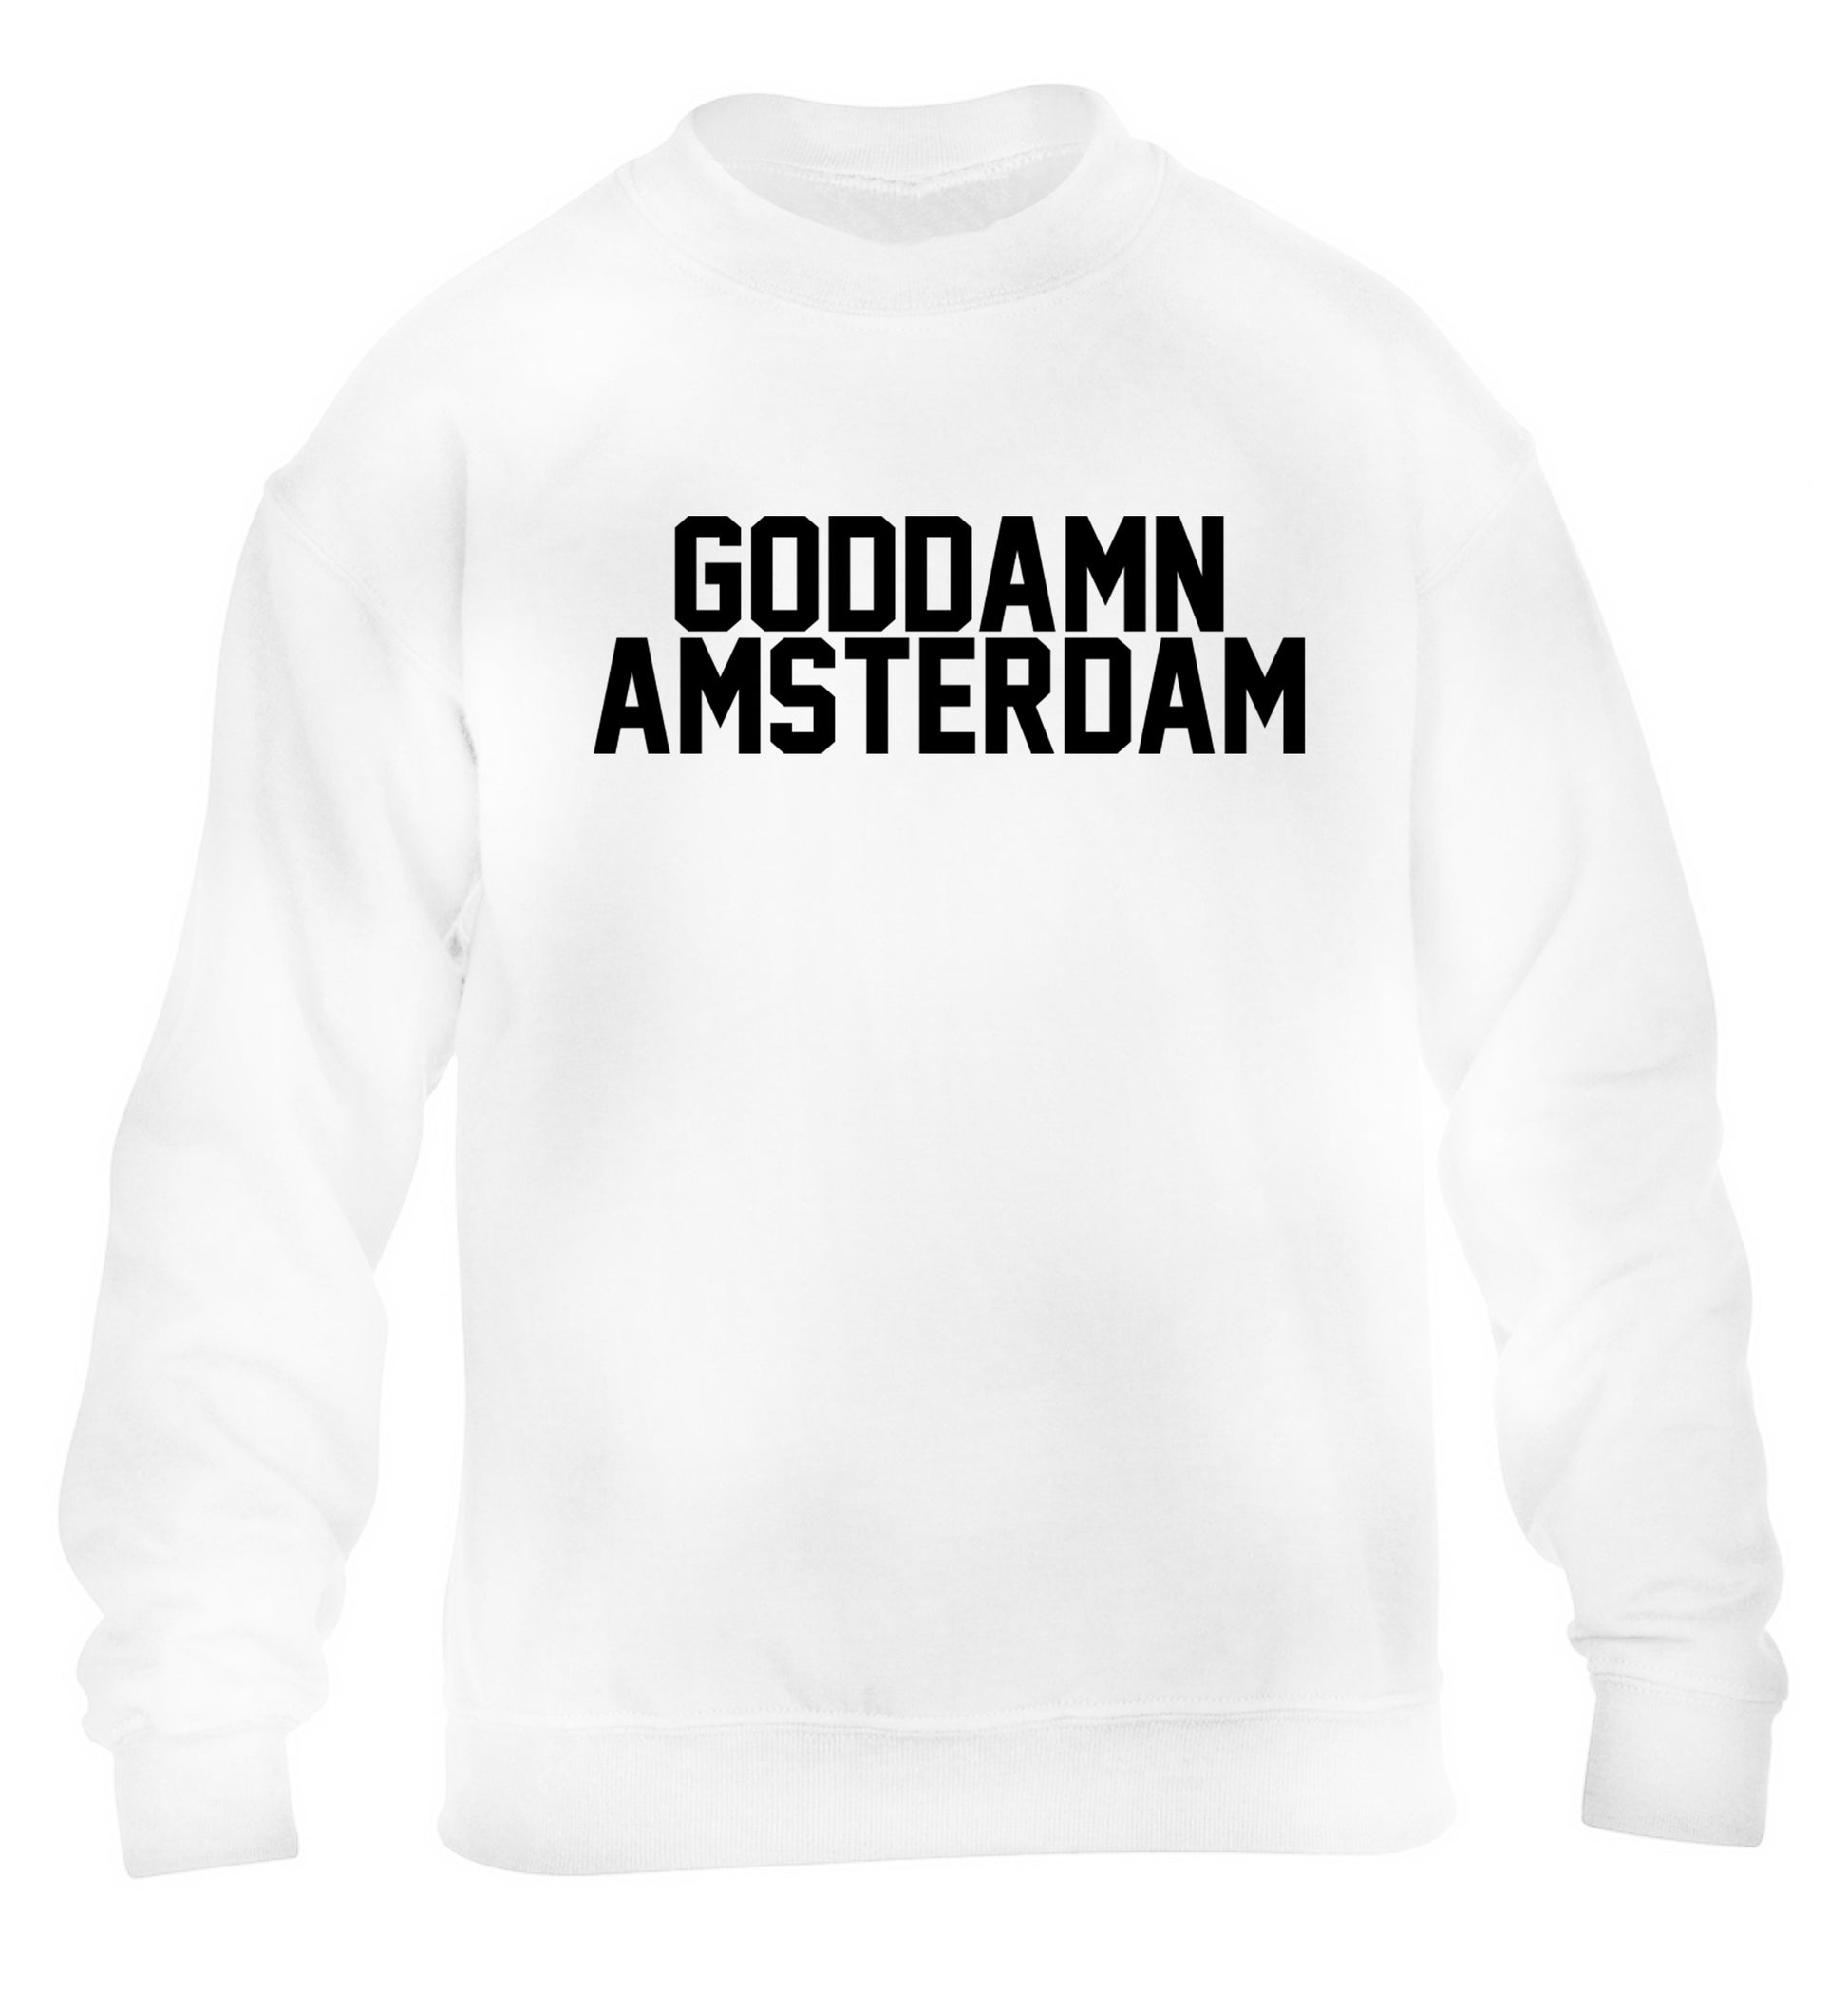 Goddamn Amsterdam children's white sweater 12-13 Years